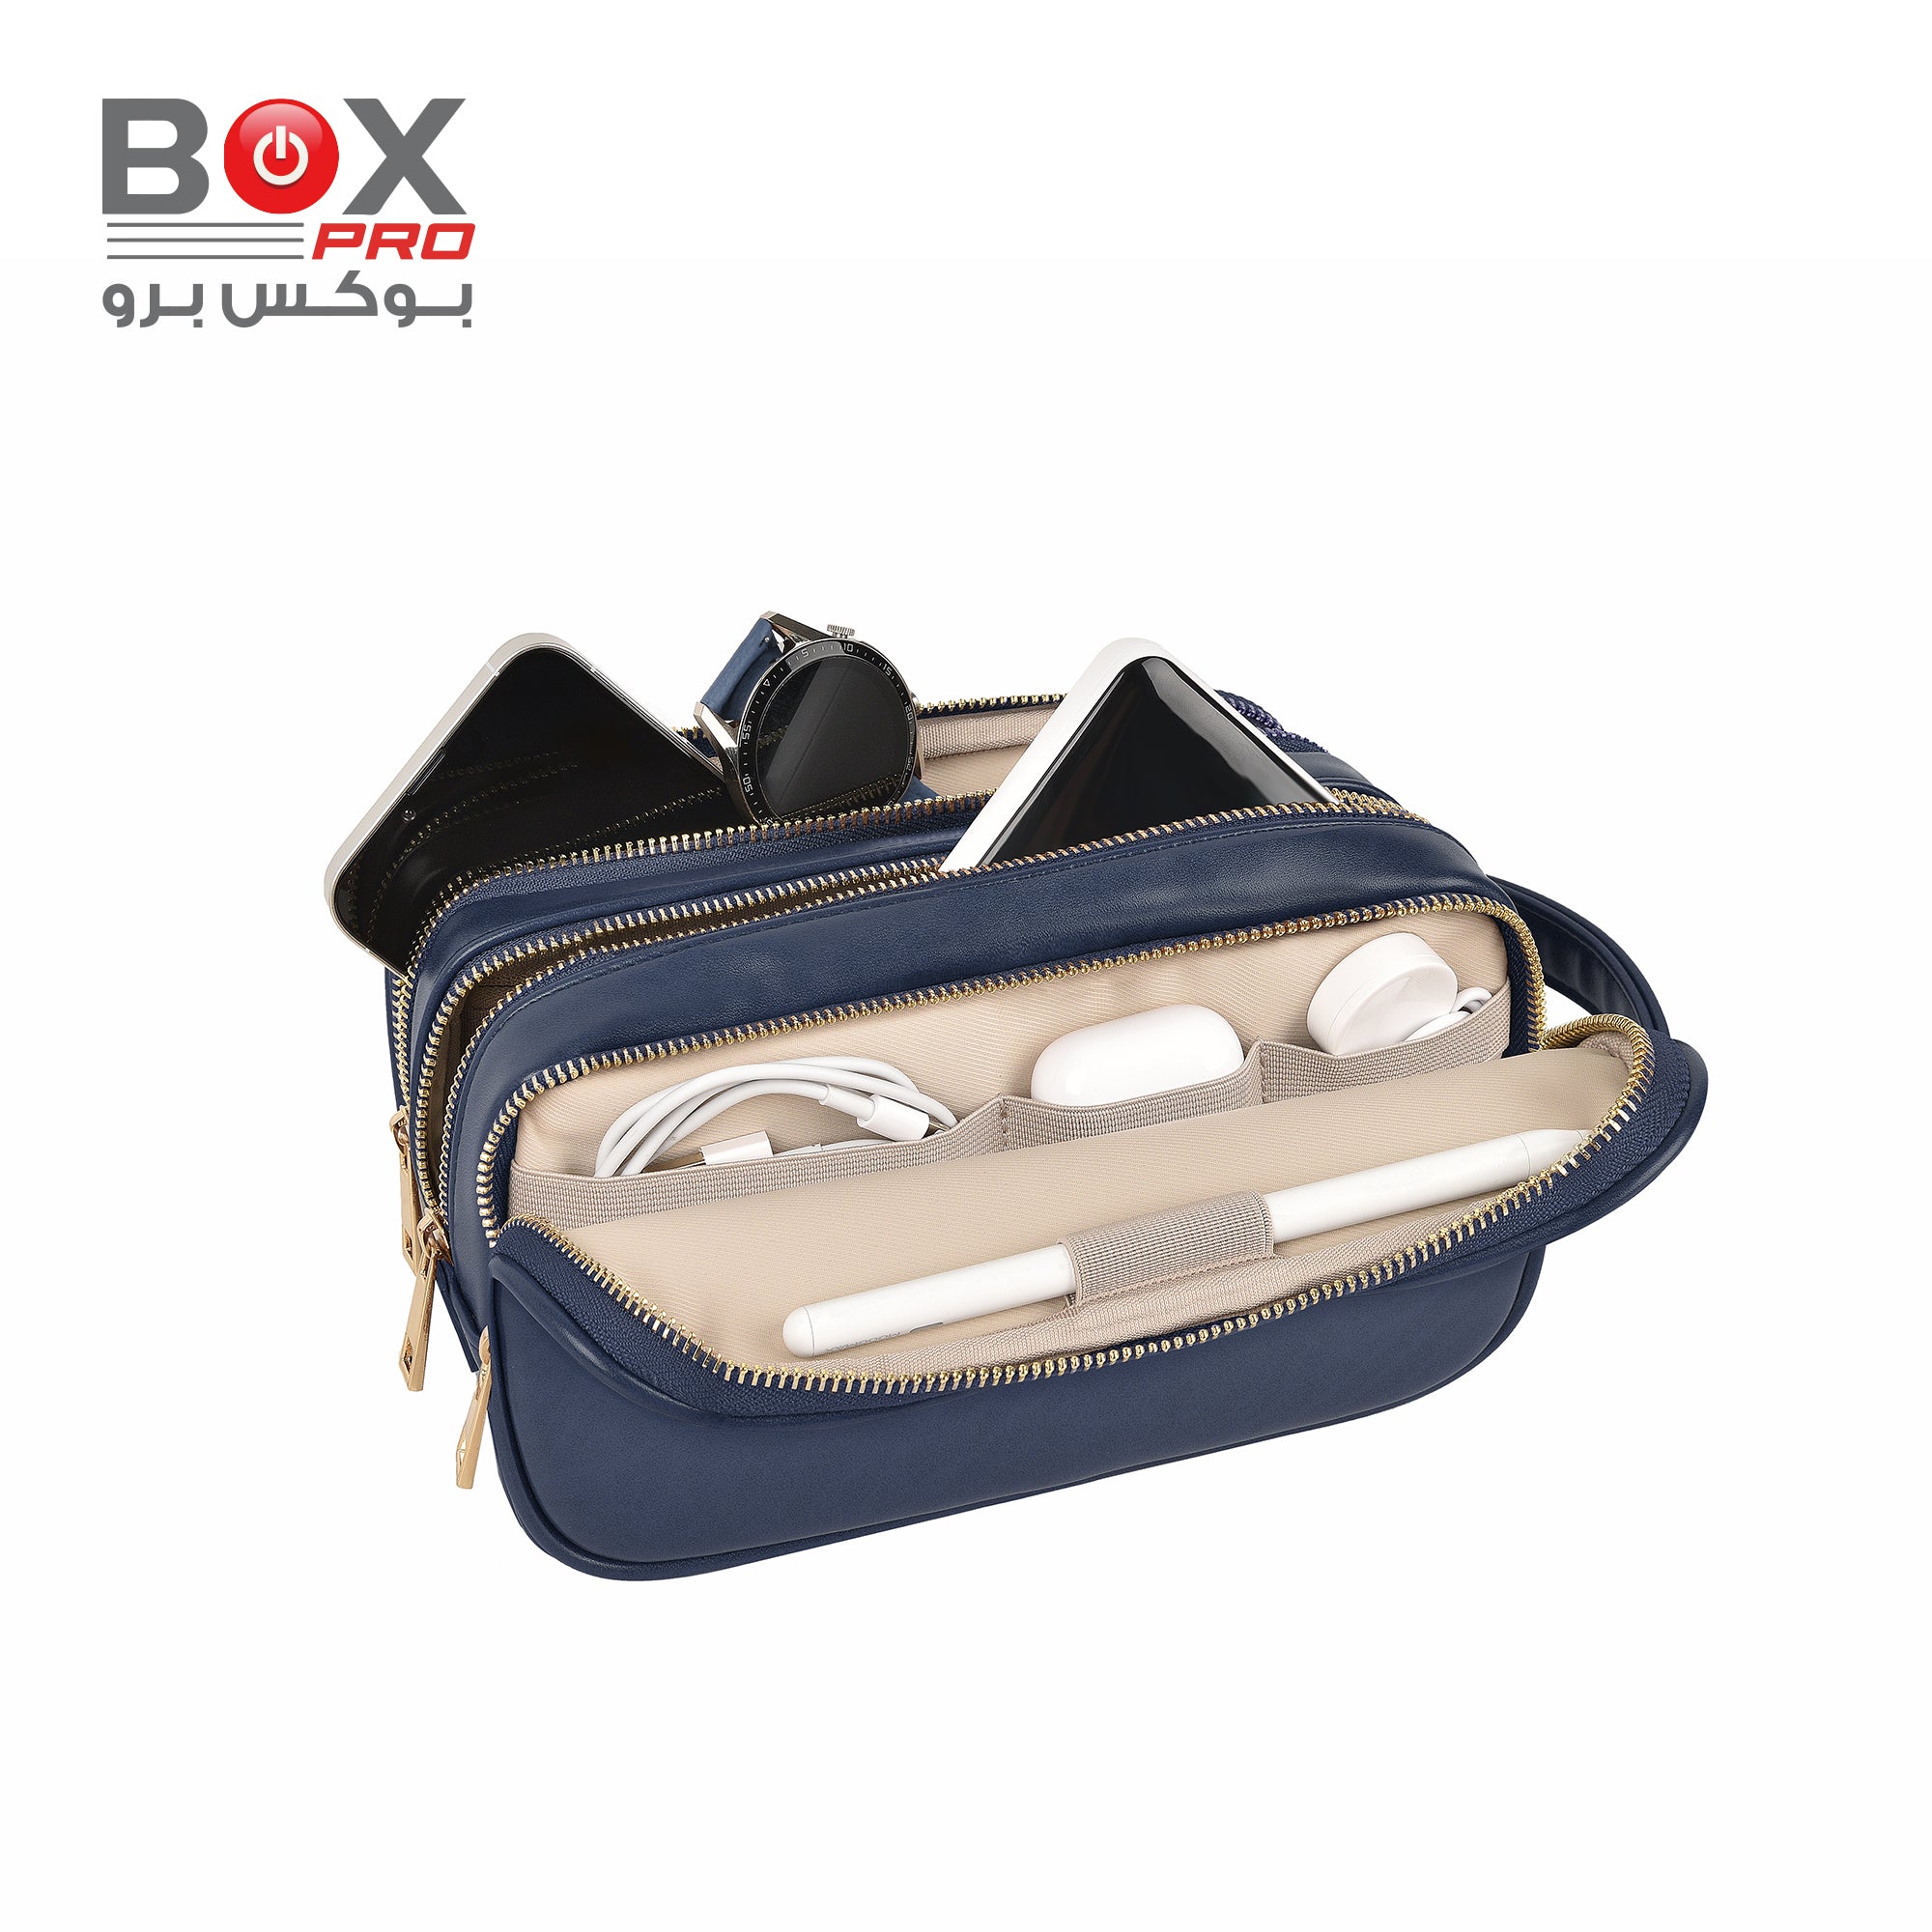 BoxPro Salem Lux Tri Compartment Organize Case - Blue